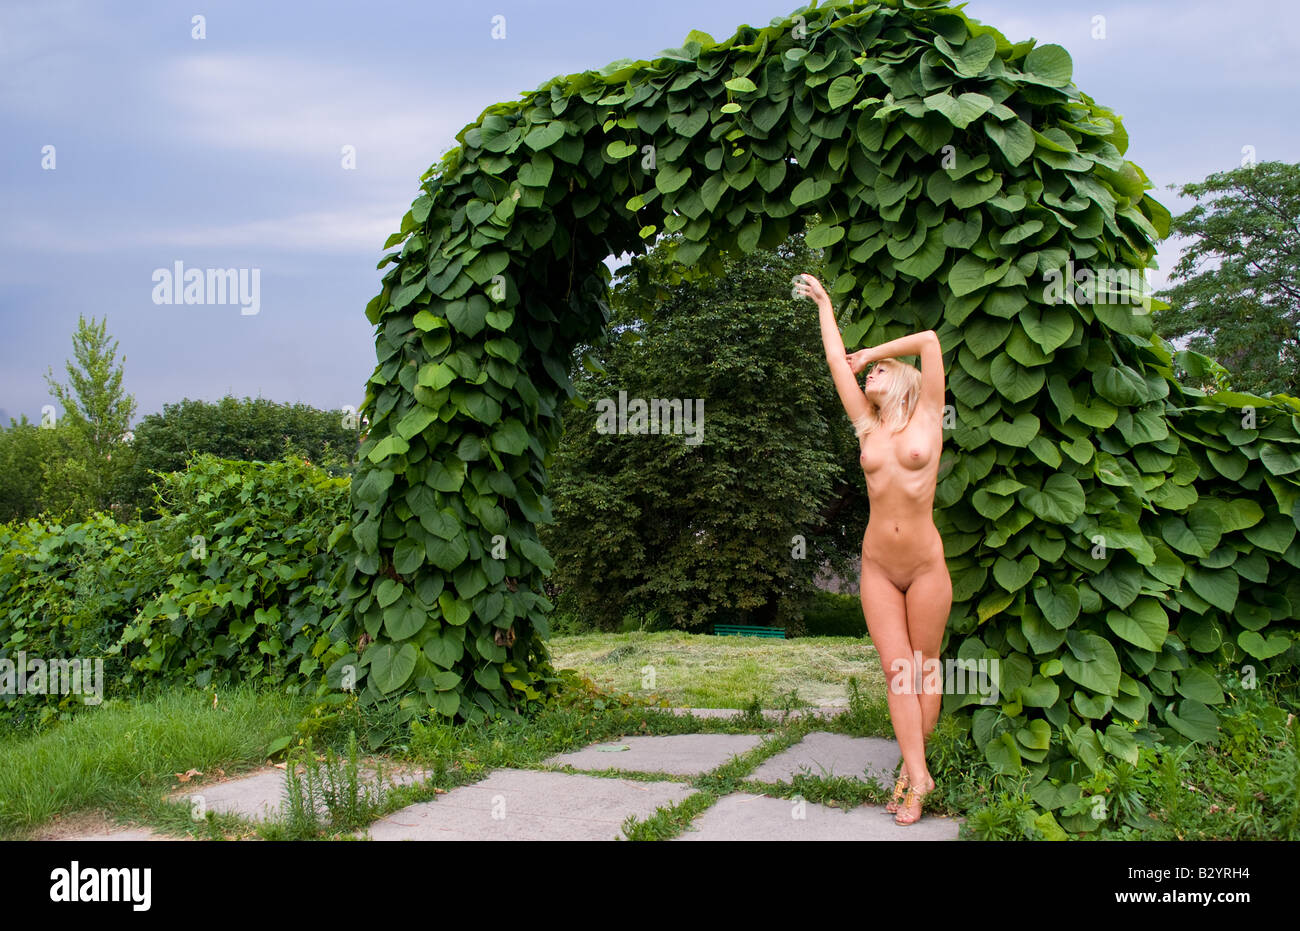 Nude in garden